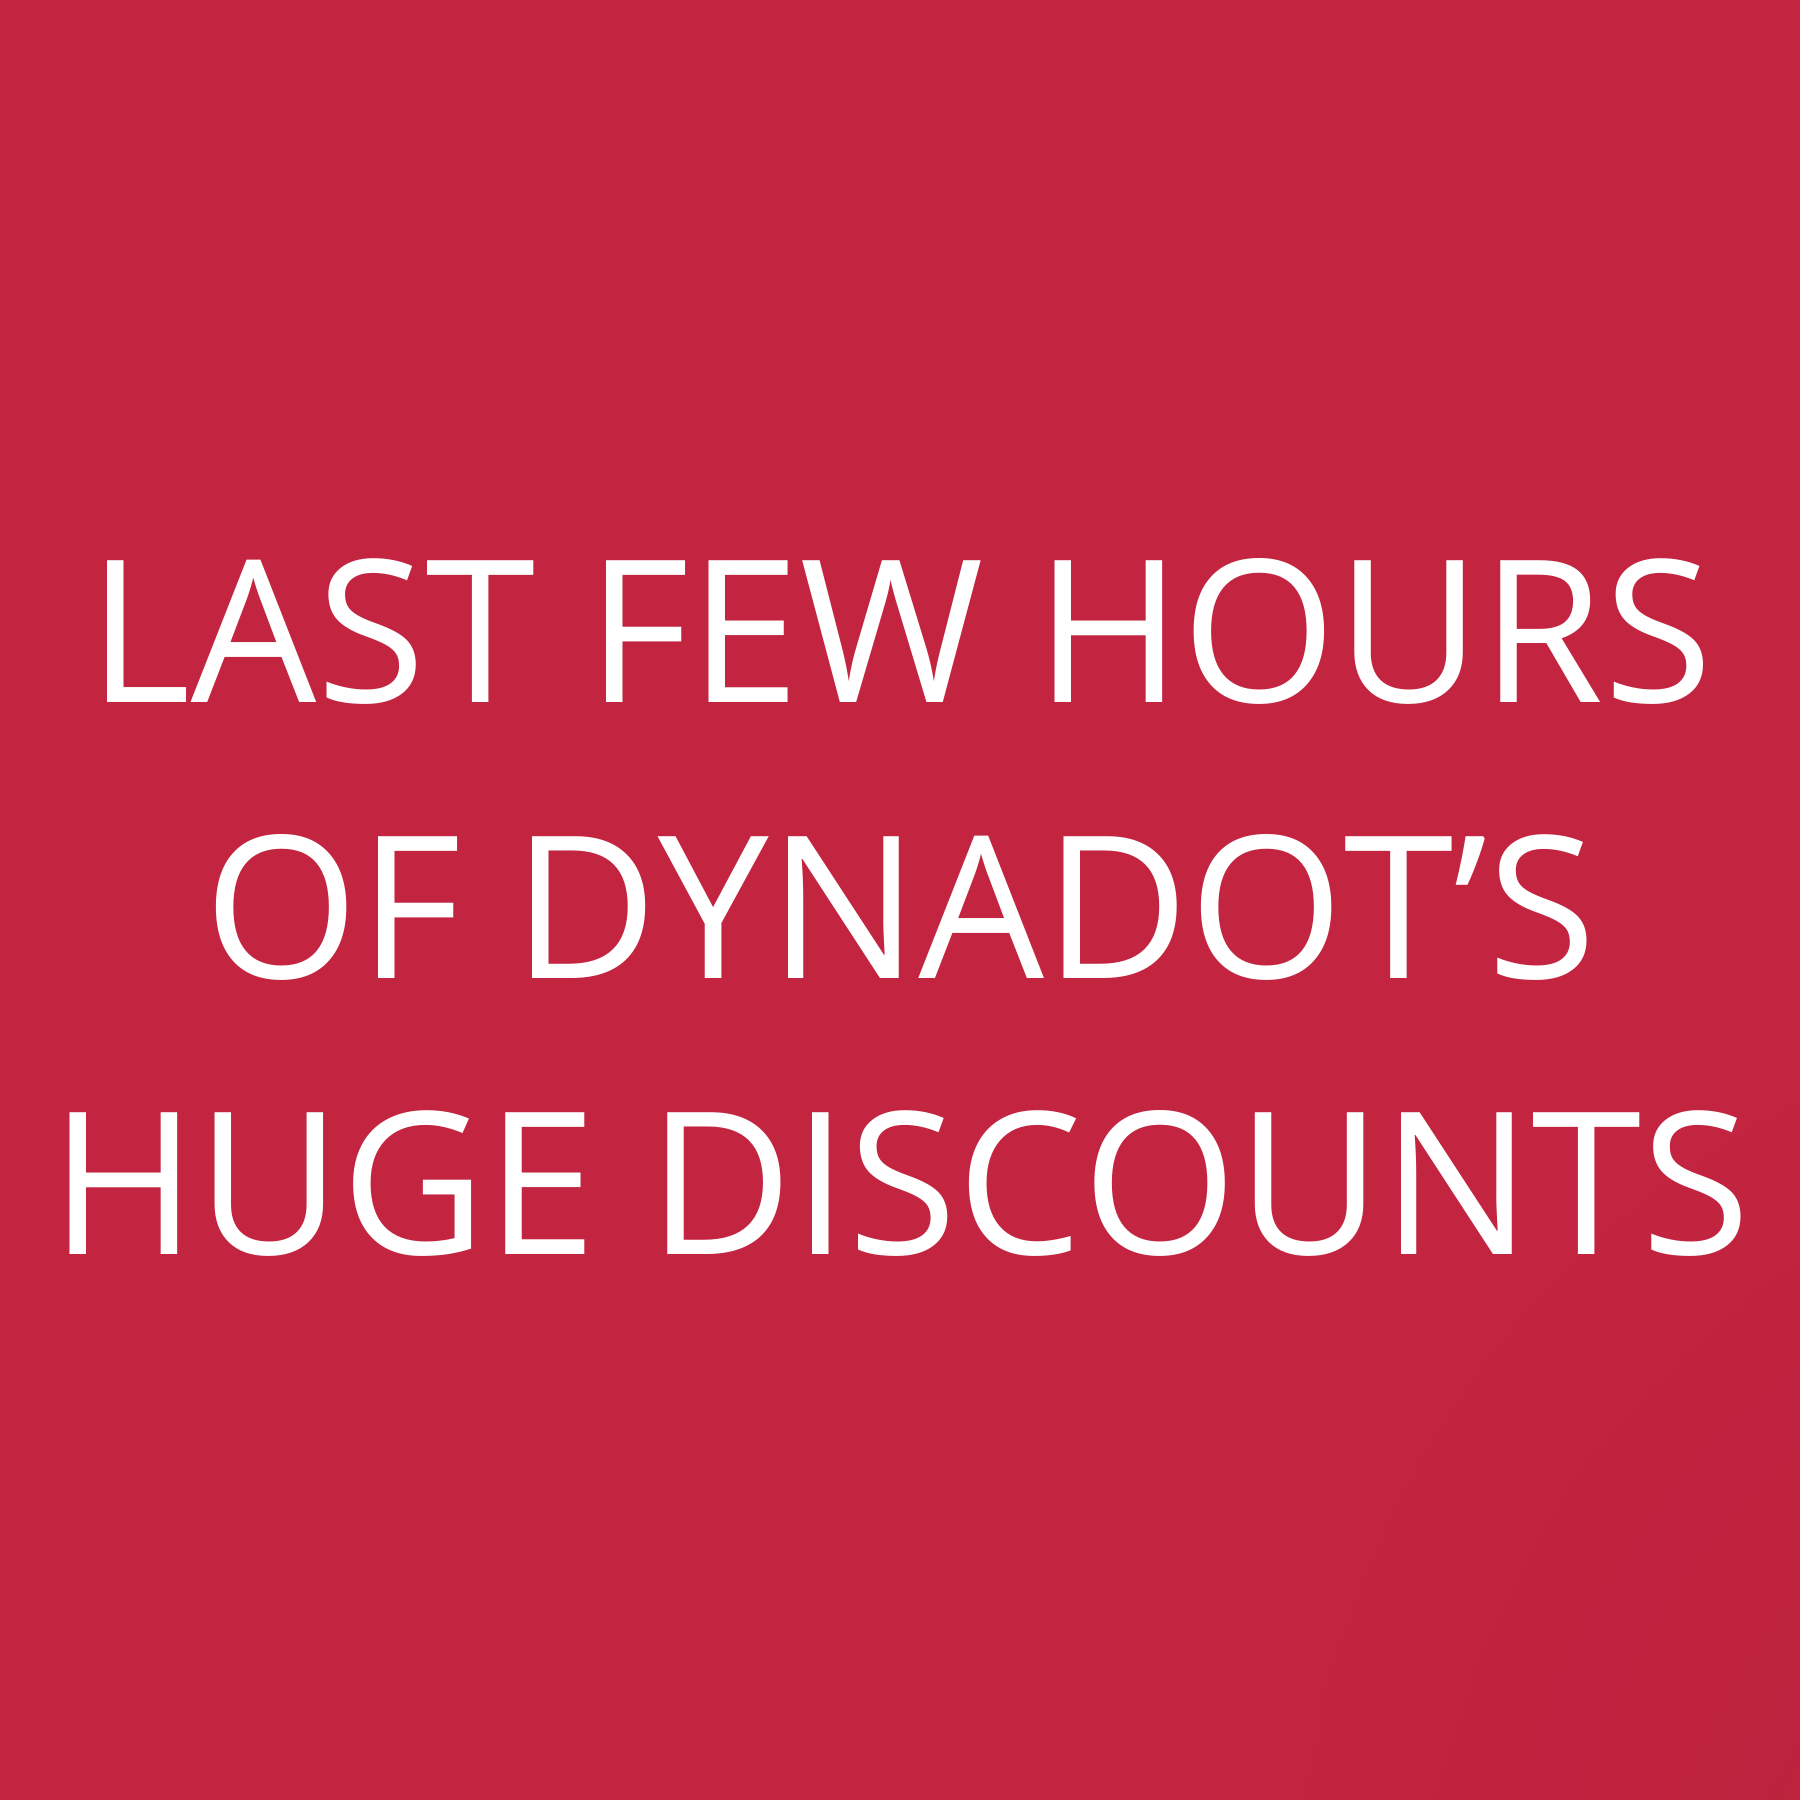 Last few hours of Dynadot’s huge discounts